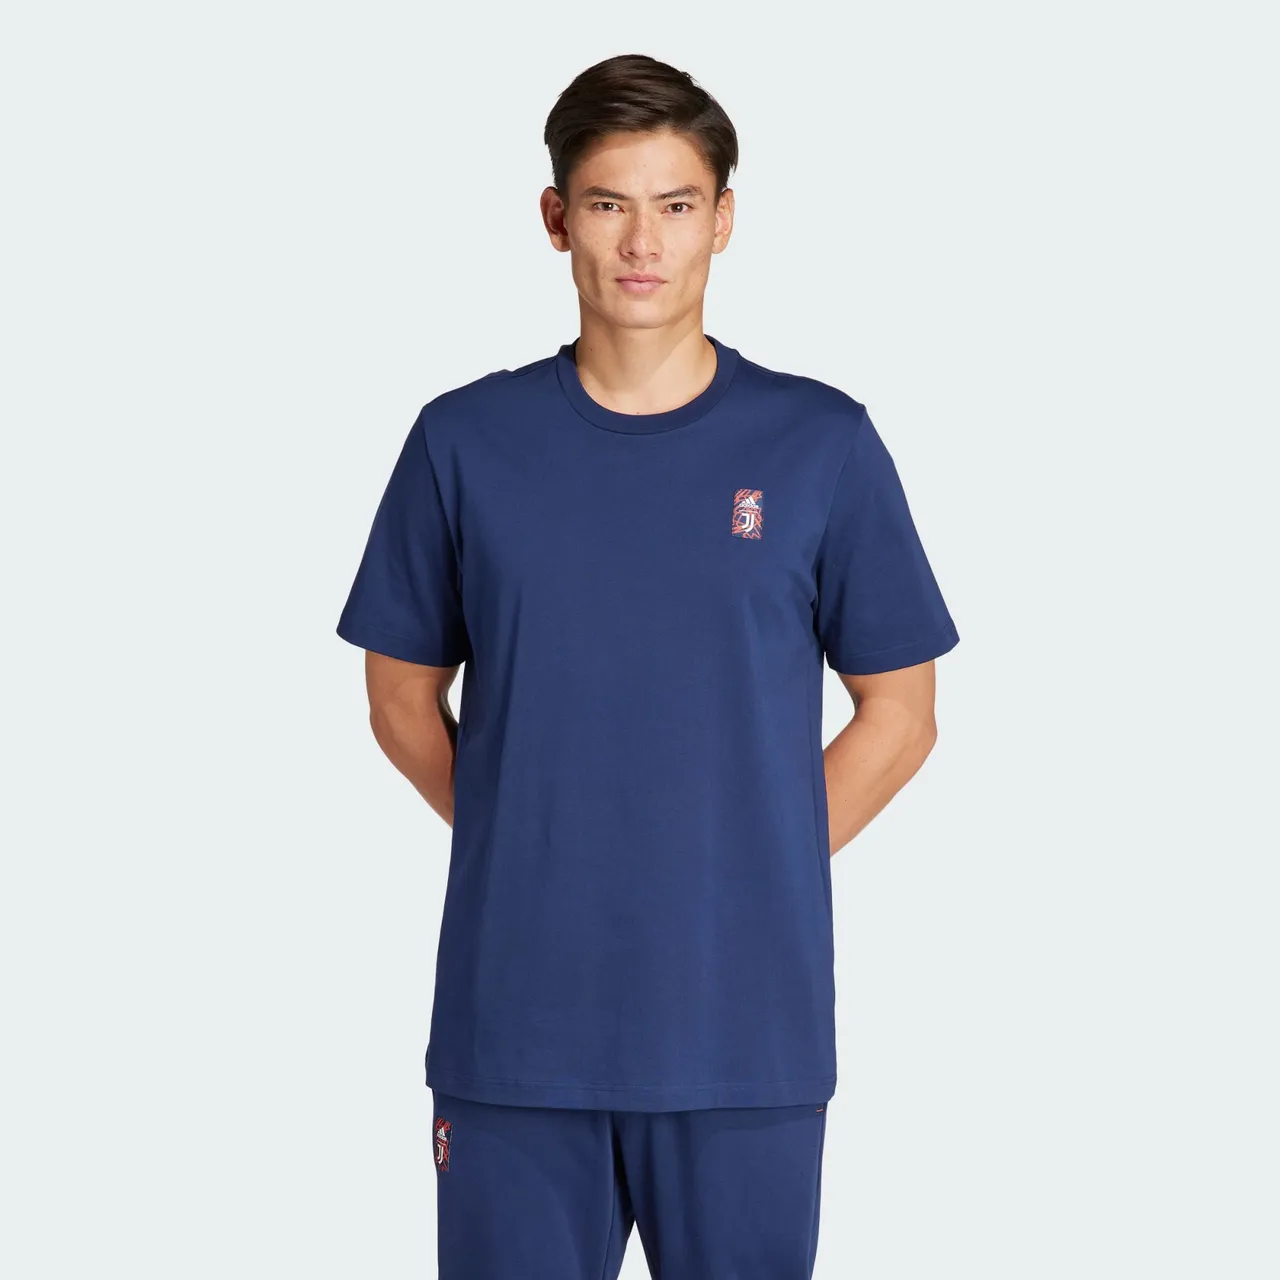 Functioneel shirt 'Juventus Turin'